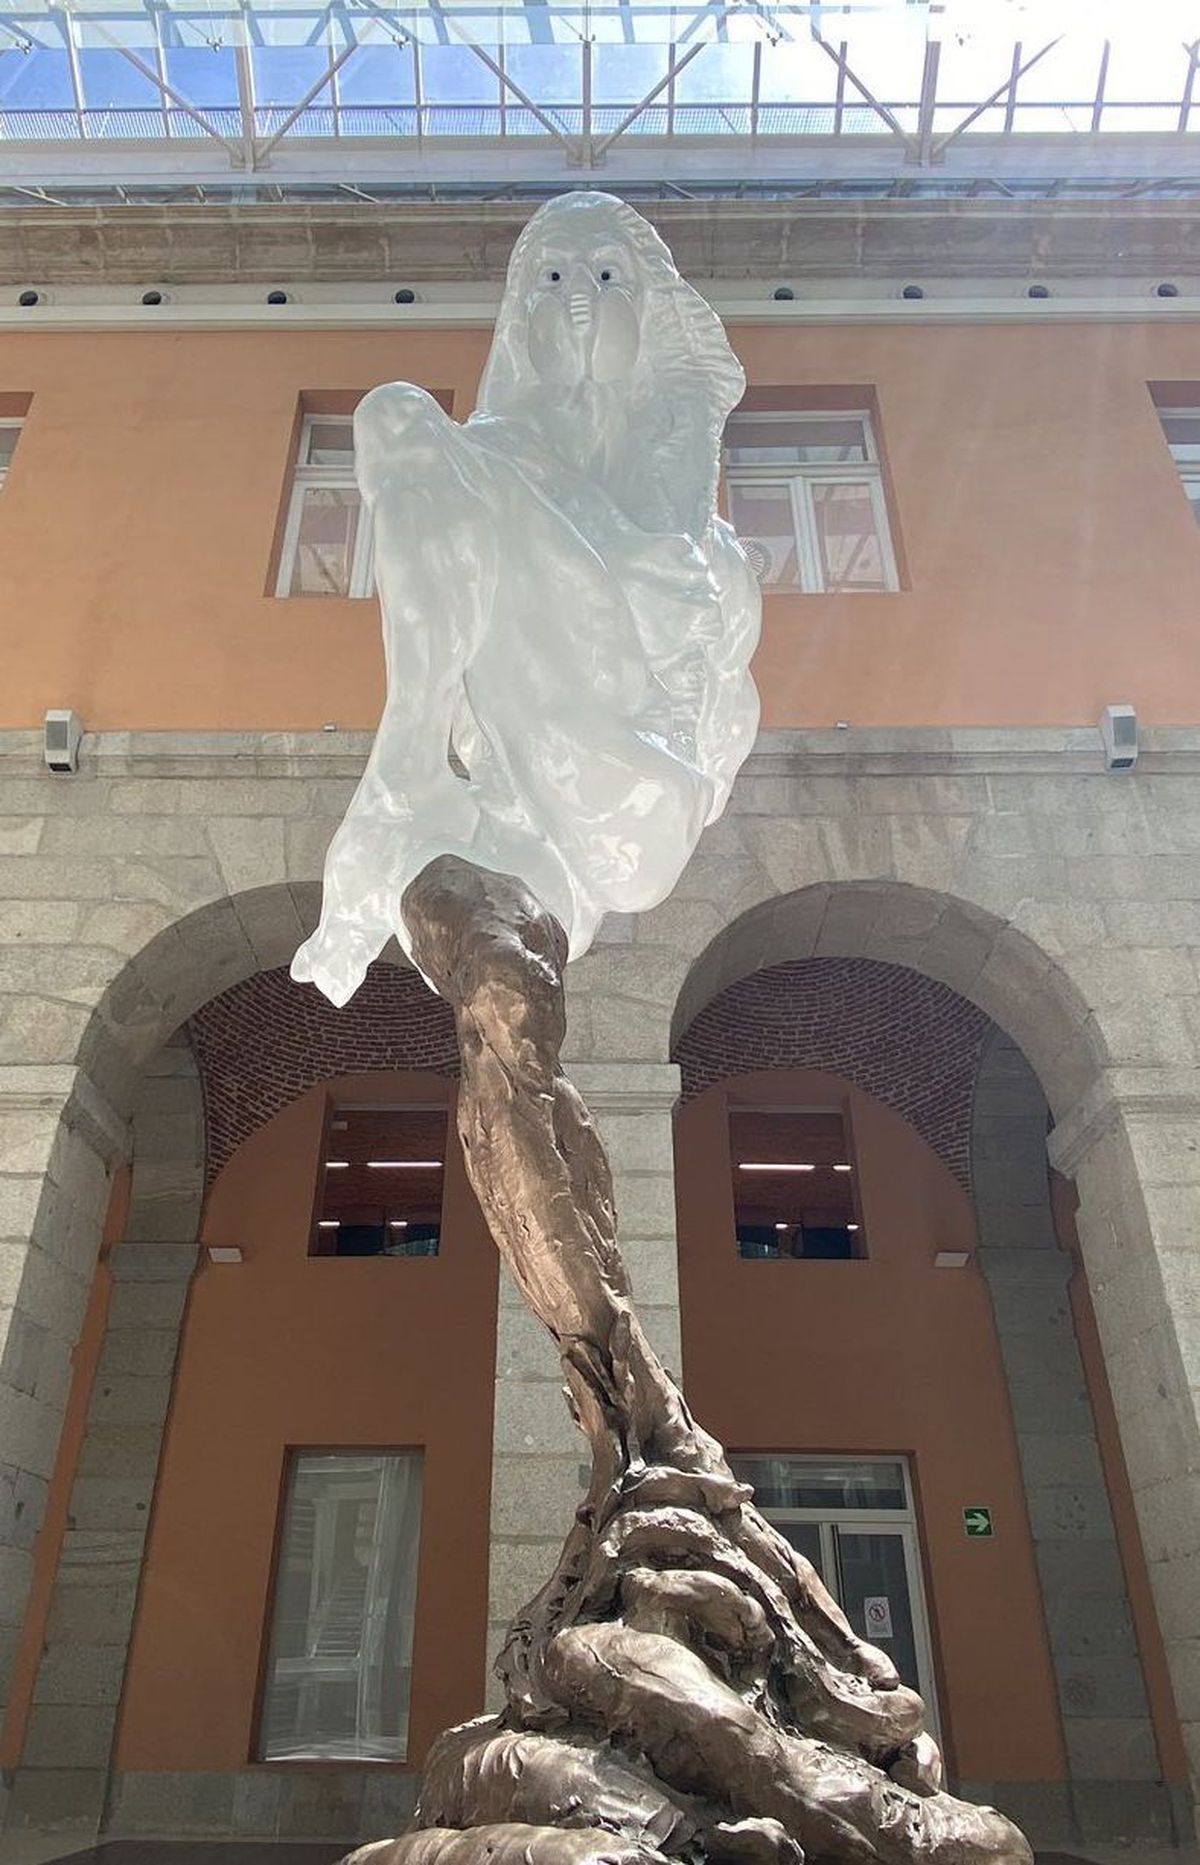 WTF?! Imagini HORROR în Spania! O sculptură dedicată victimelor COVID-19 a stârnit repulsie generală: „O fantomă care se c**ă!”